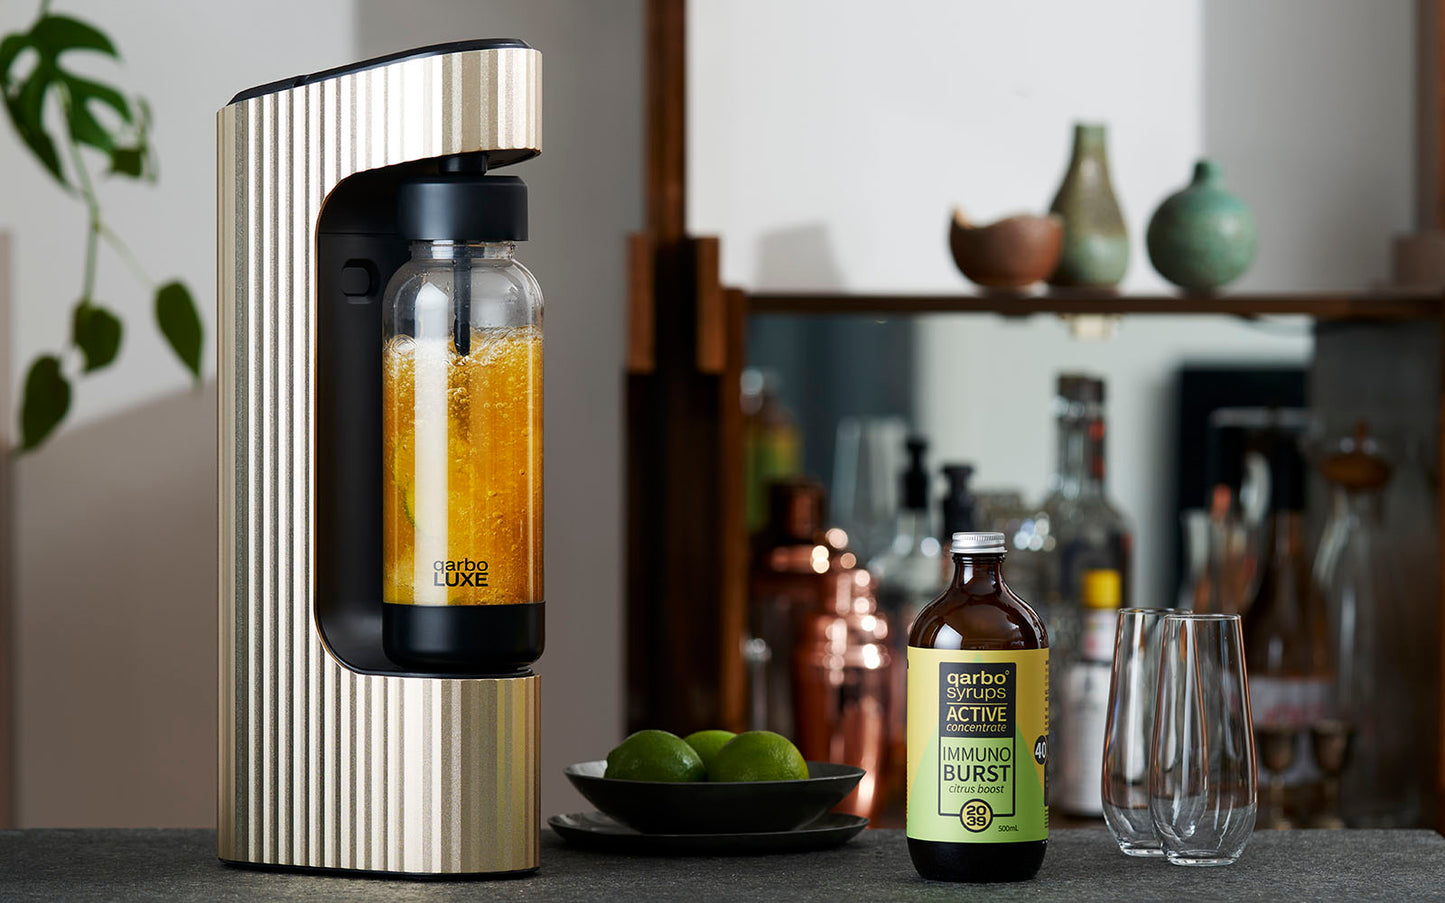 qarbo LUXE - Sparkling Beverage Maker Starter Pack including CO2 Cylinder